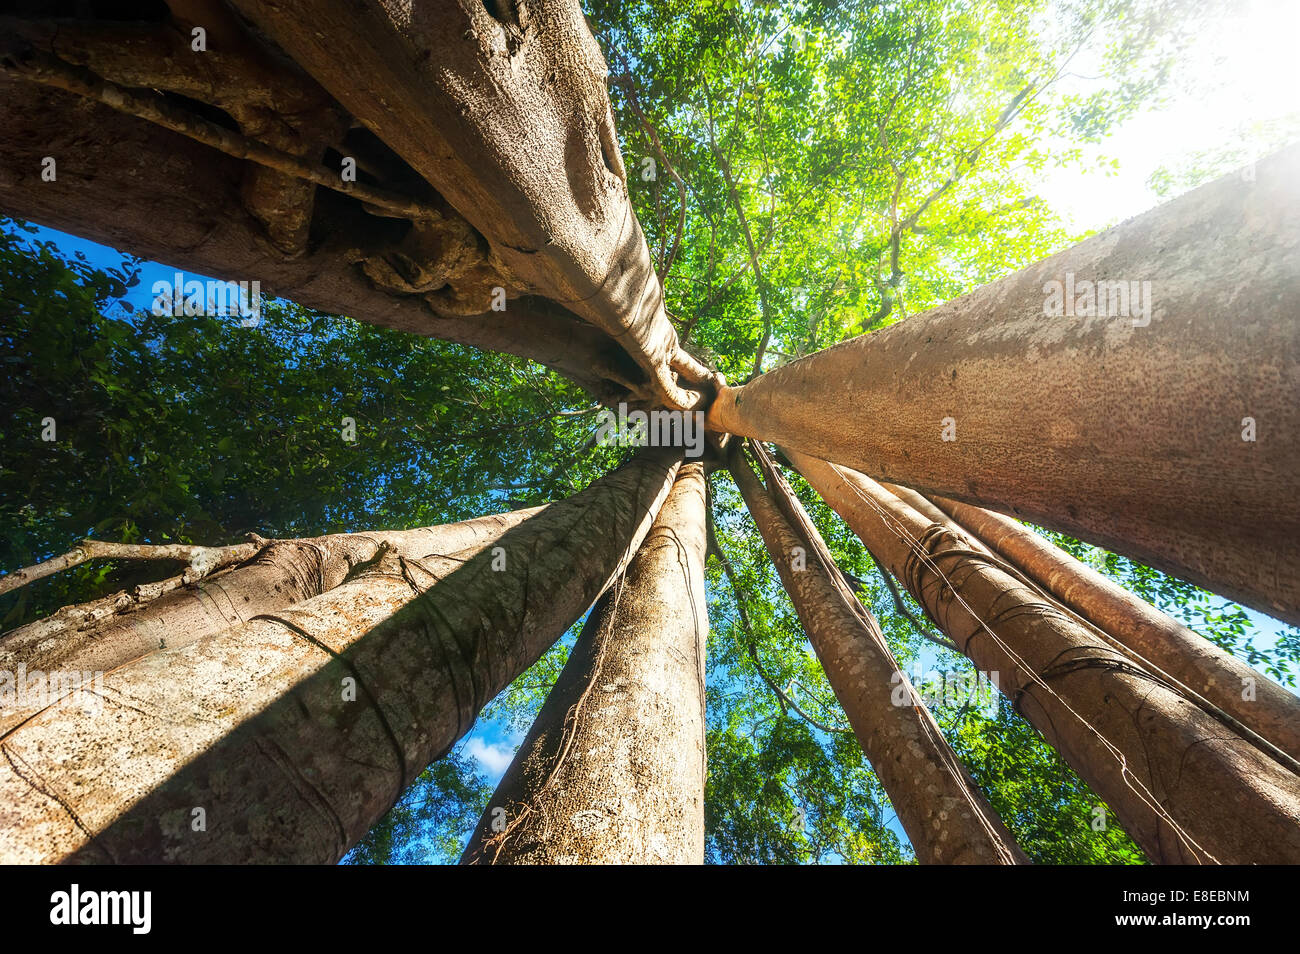 Incredibile giornata di sole a foresta pluviale con il gigante banyan tree tropicale e raggi solari. La natura e il paesaggio sullo sfondo di viaggio. Cambogia Foto Stock